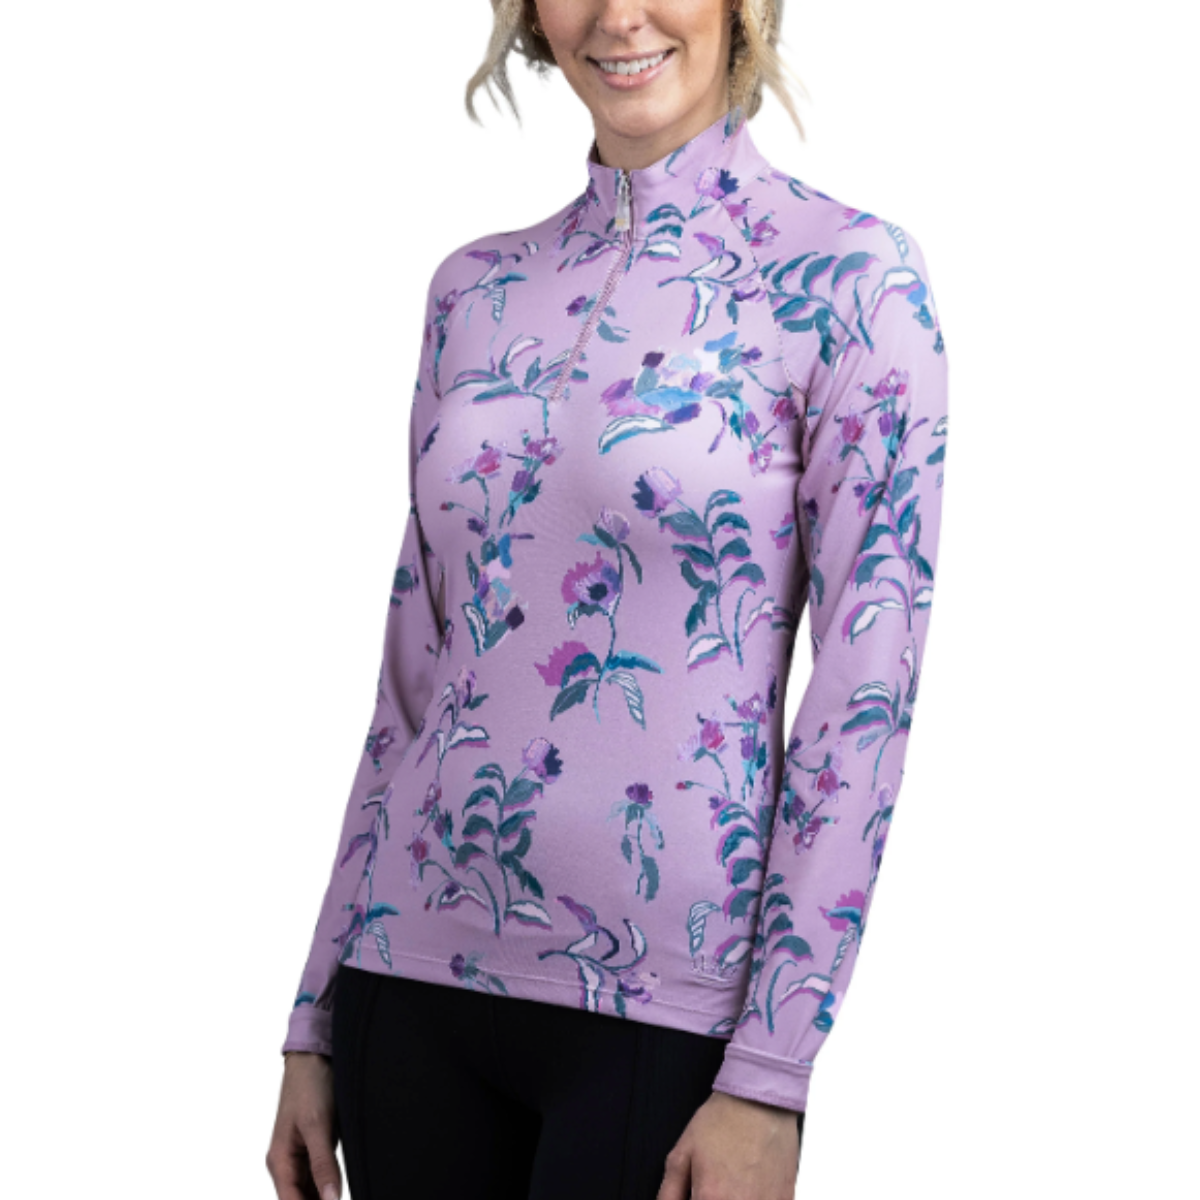 Kastel Long Sleeve 1/4 Zip Shirt in Lilac Fleur